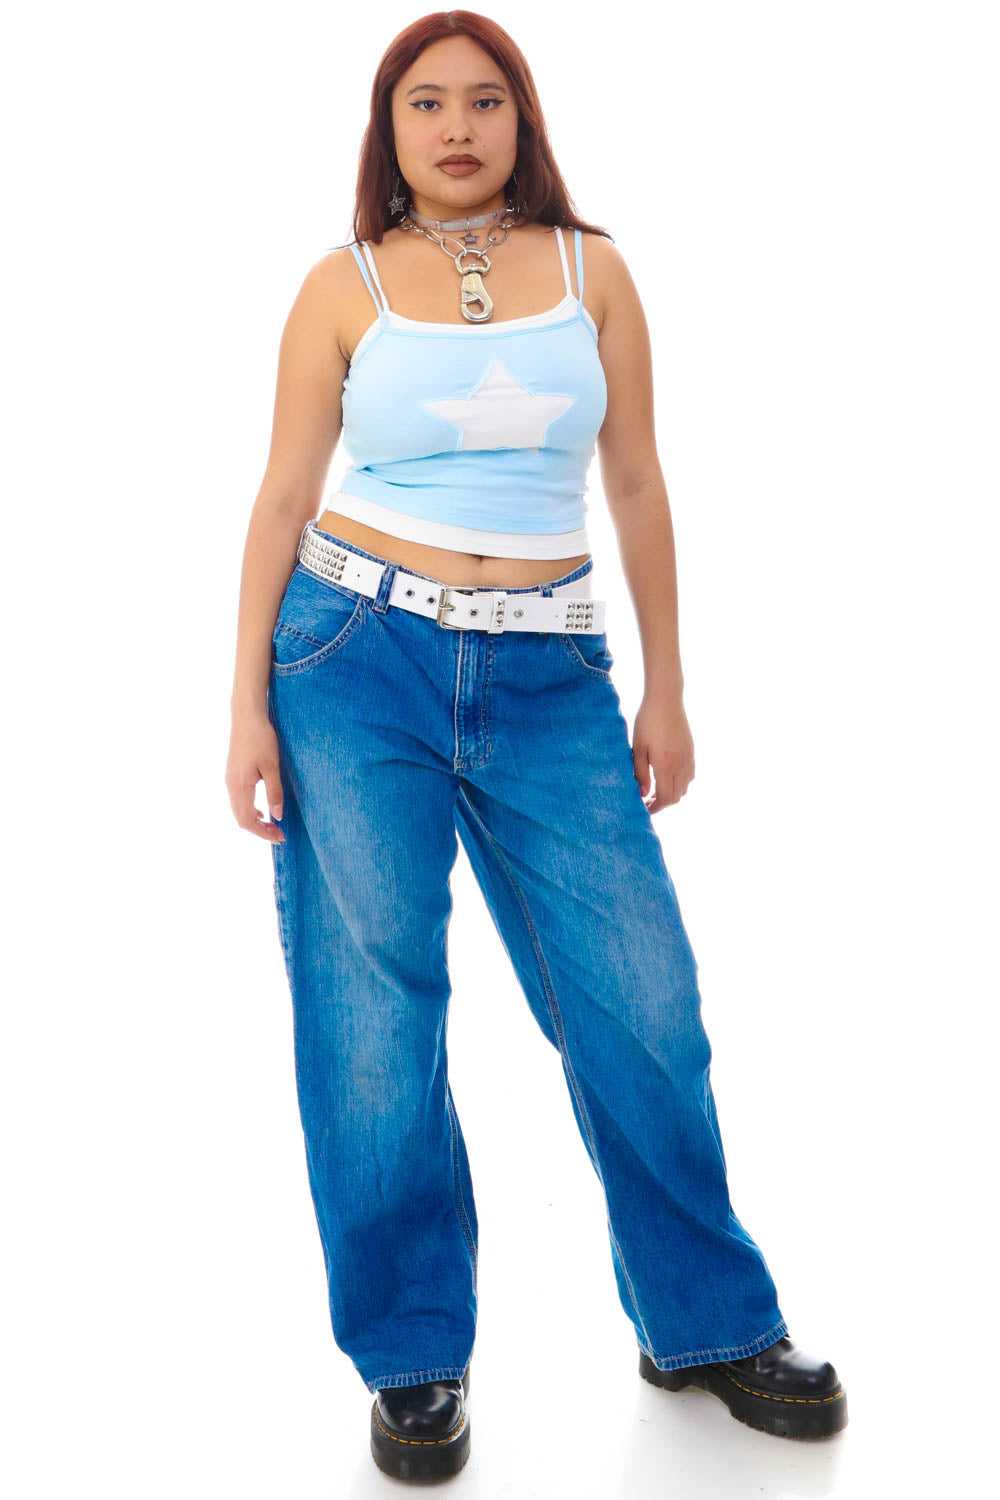 Vintage 90s Gap Denim Jeans 31x28 Med Wash Relaxed Fit Tapered Leg 5 Pocket  -  Israel